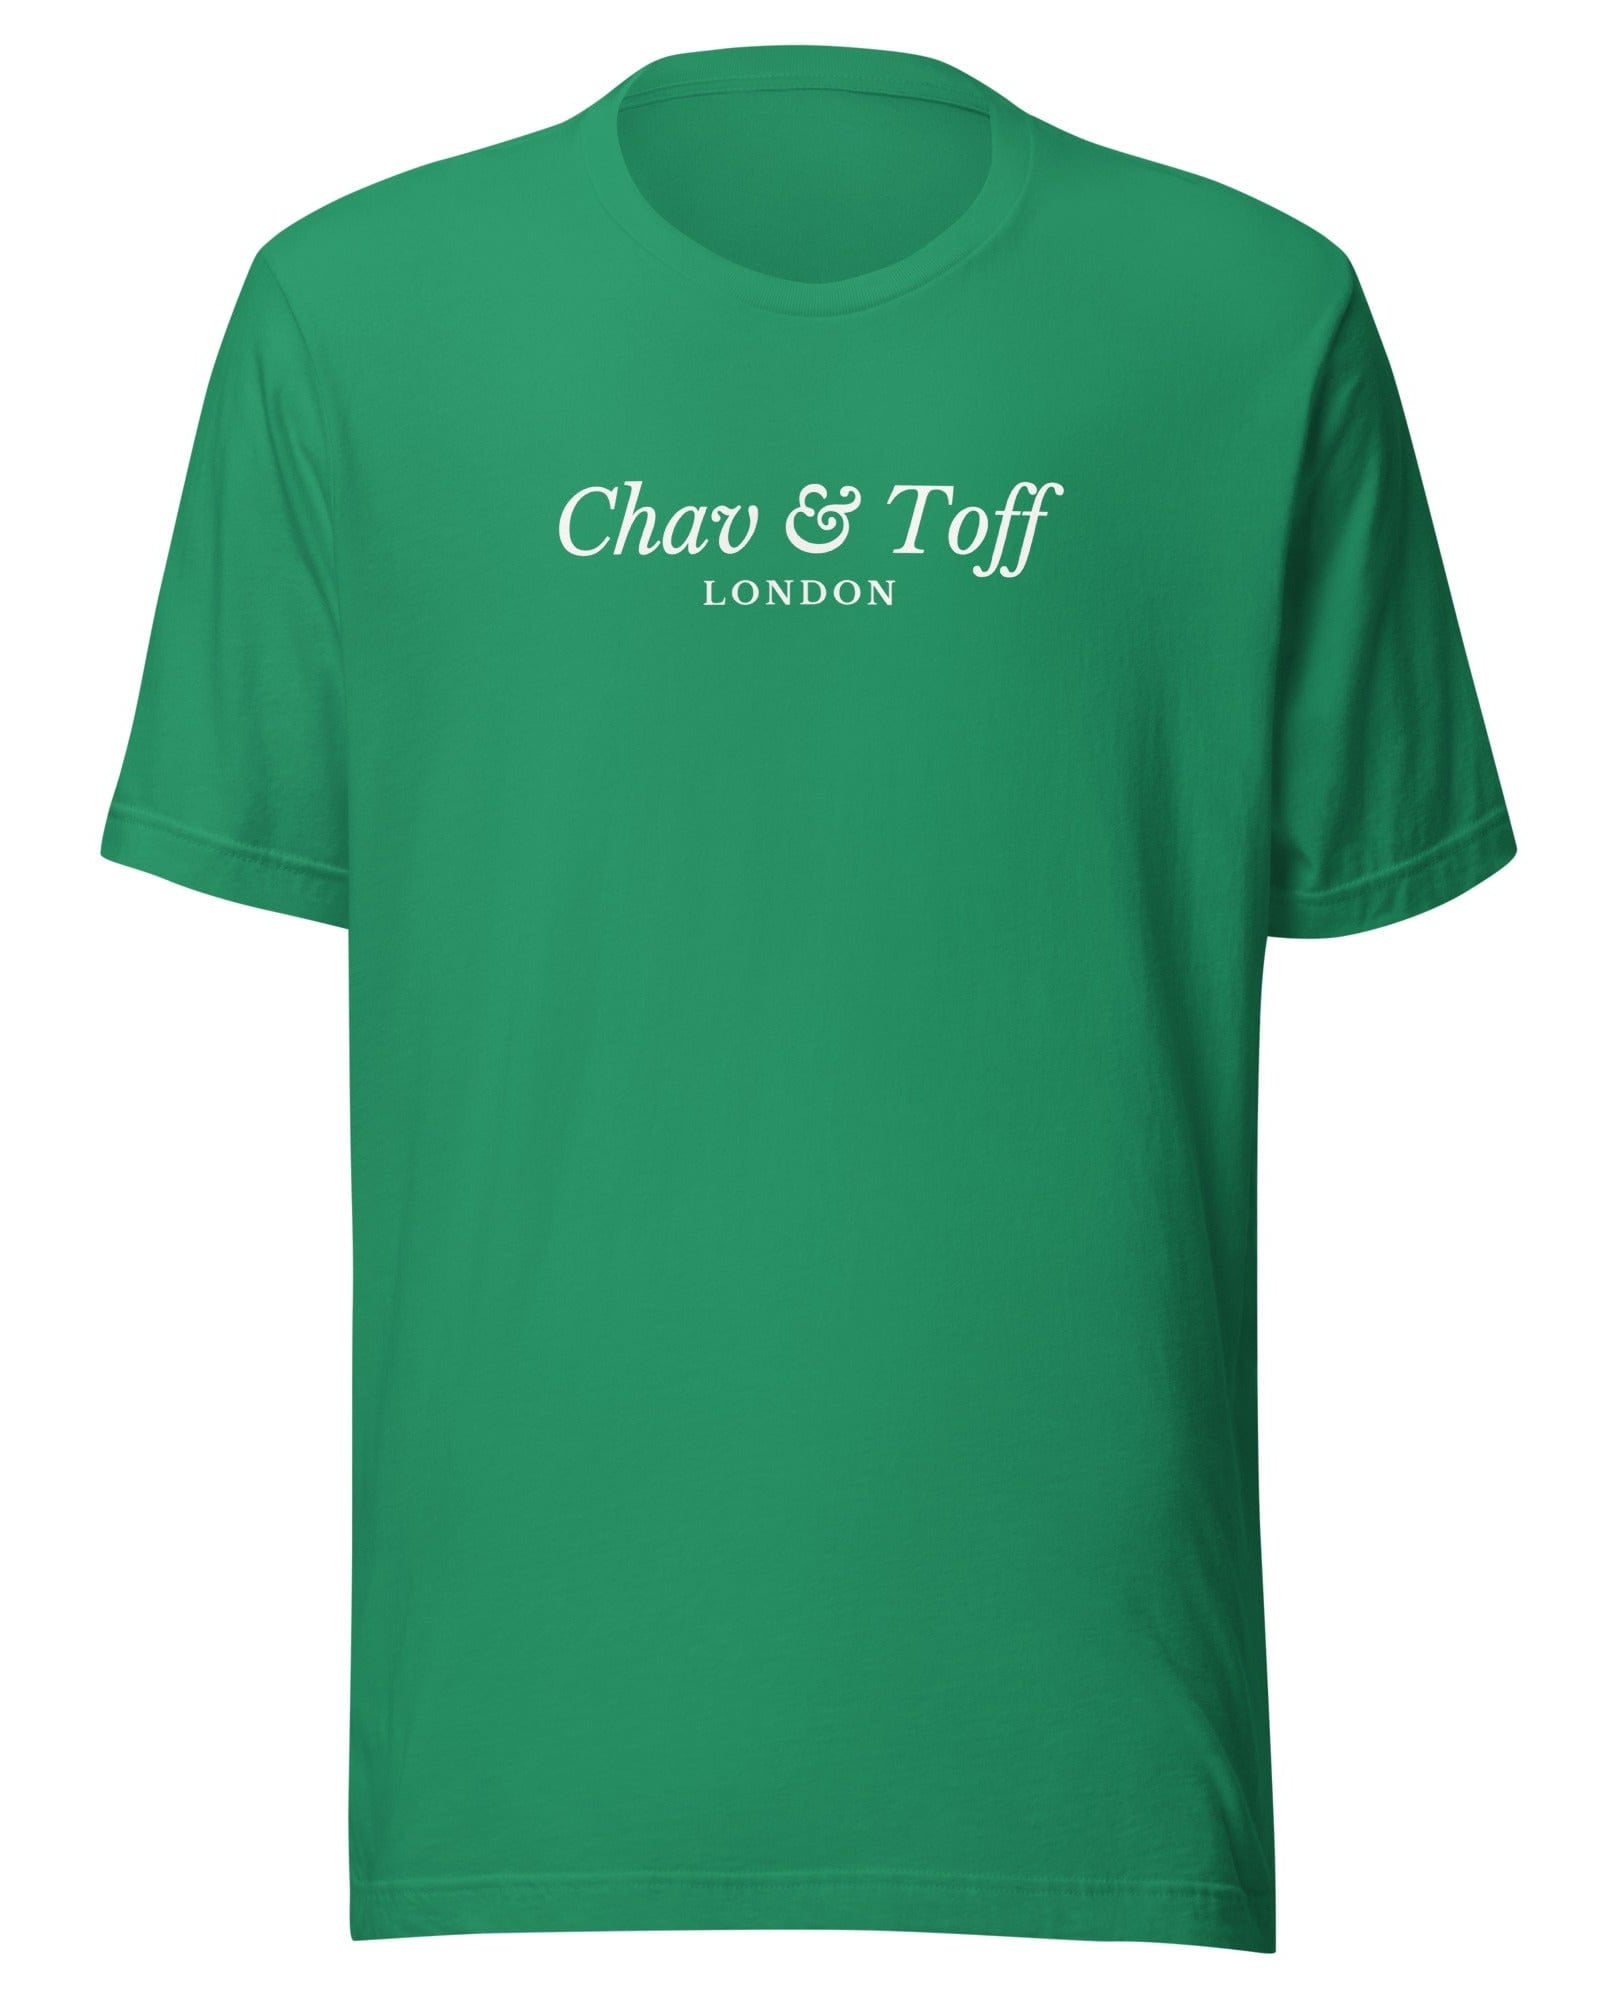 Chav & Toff London T-Shirt Kelly / S Shirts & Tops Jolly & Goode